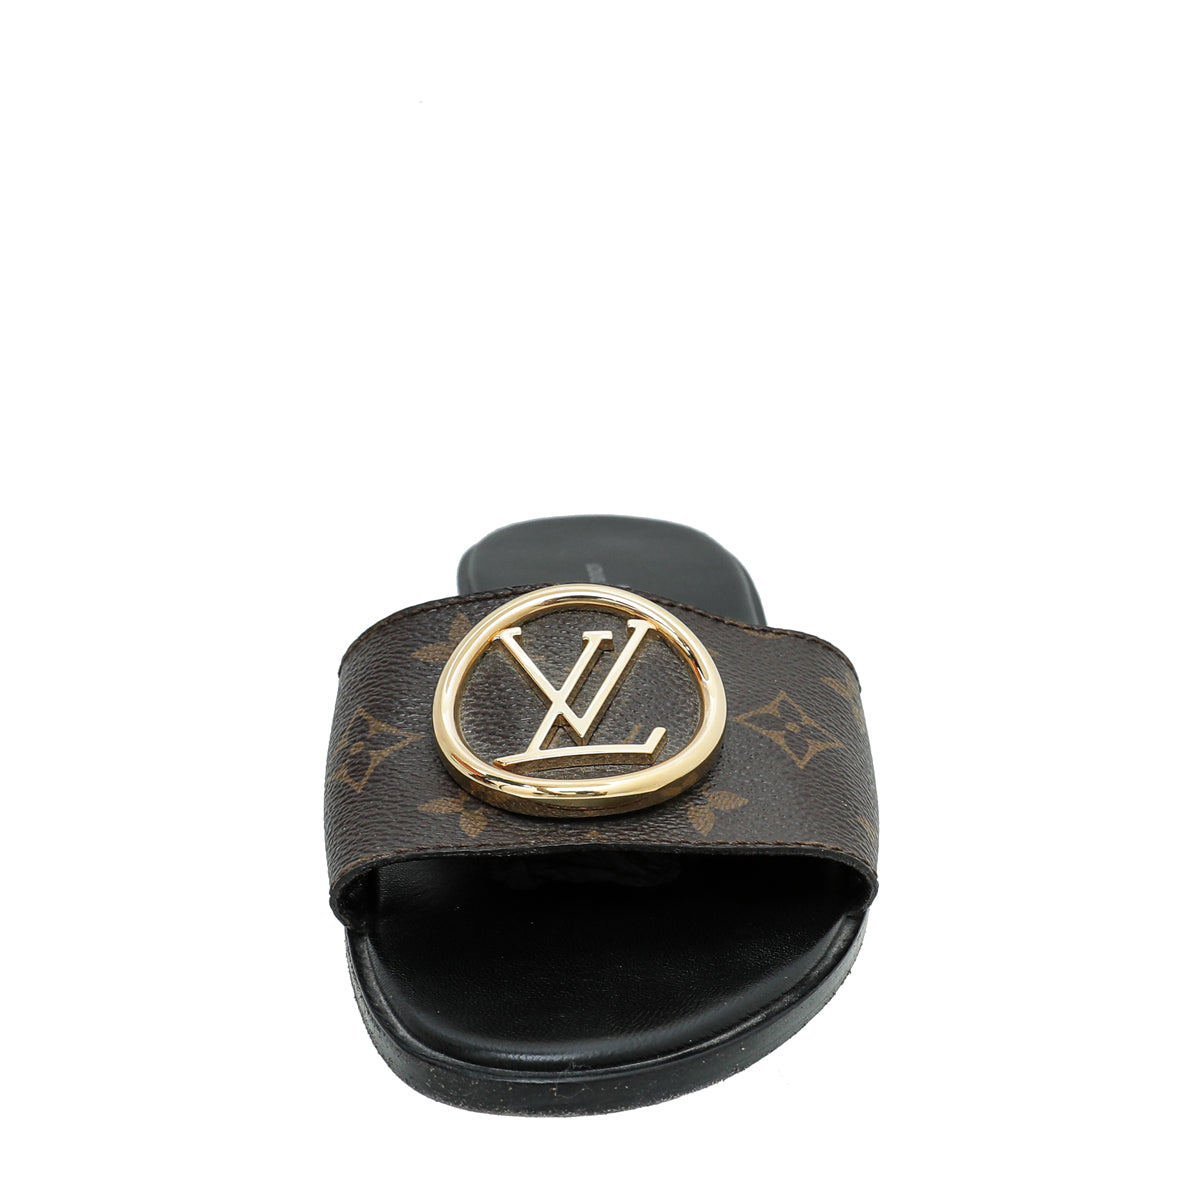 Shop Louis Vuitton LOCKIT Lock it mule (1A660F) by Sincerity_m639